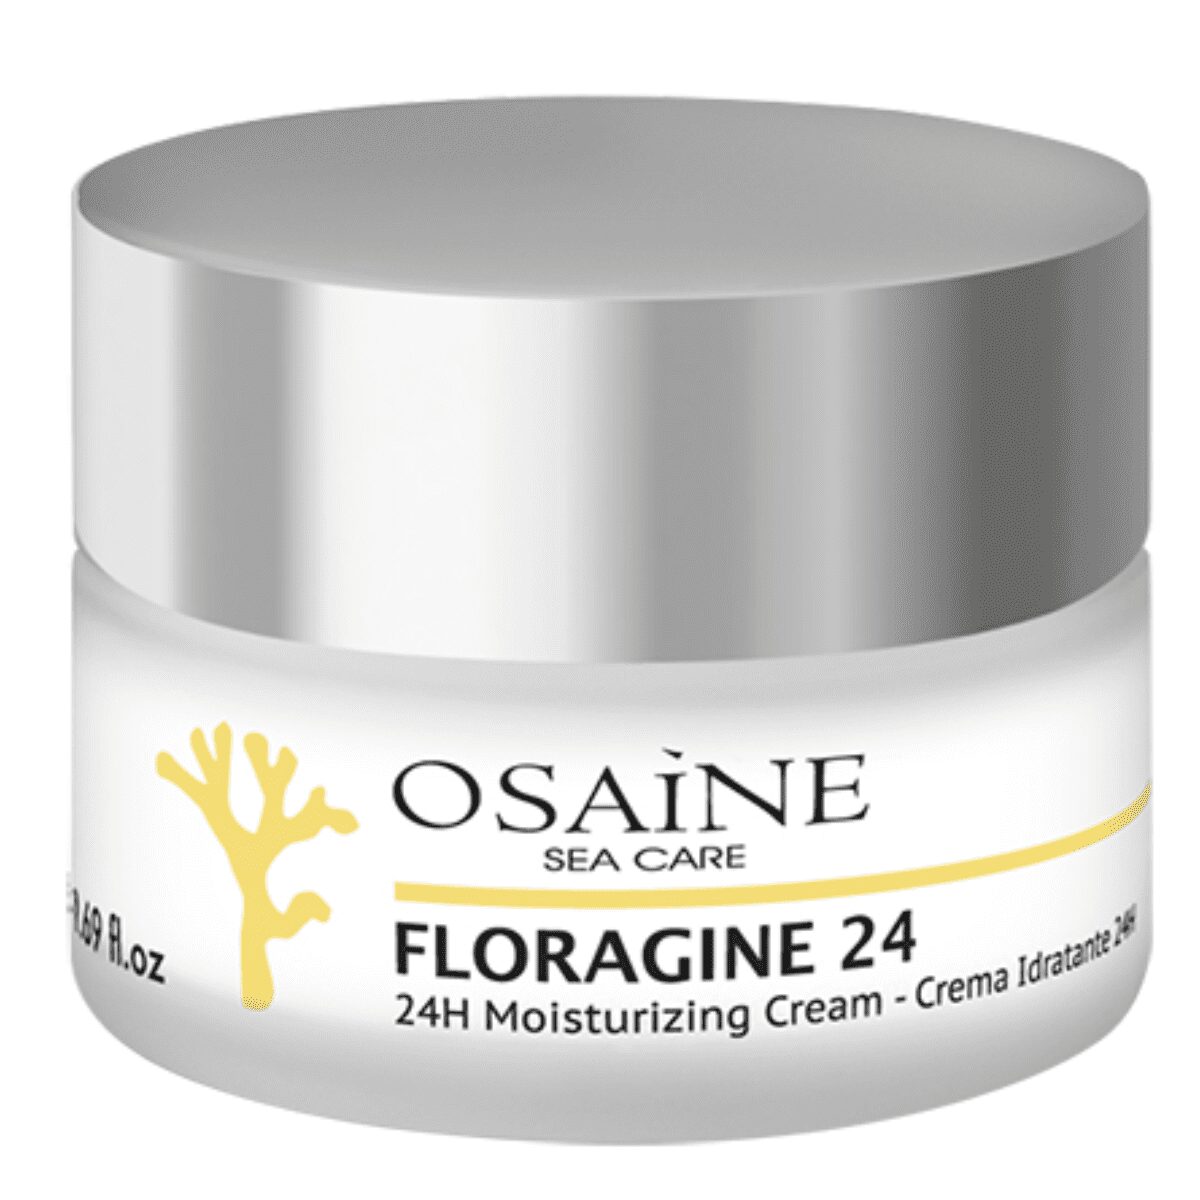 Floragine 24 Moisturising Cream